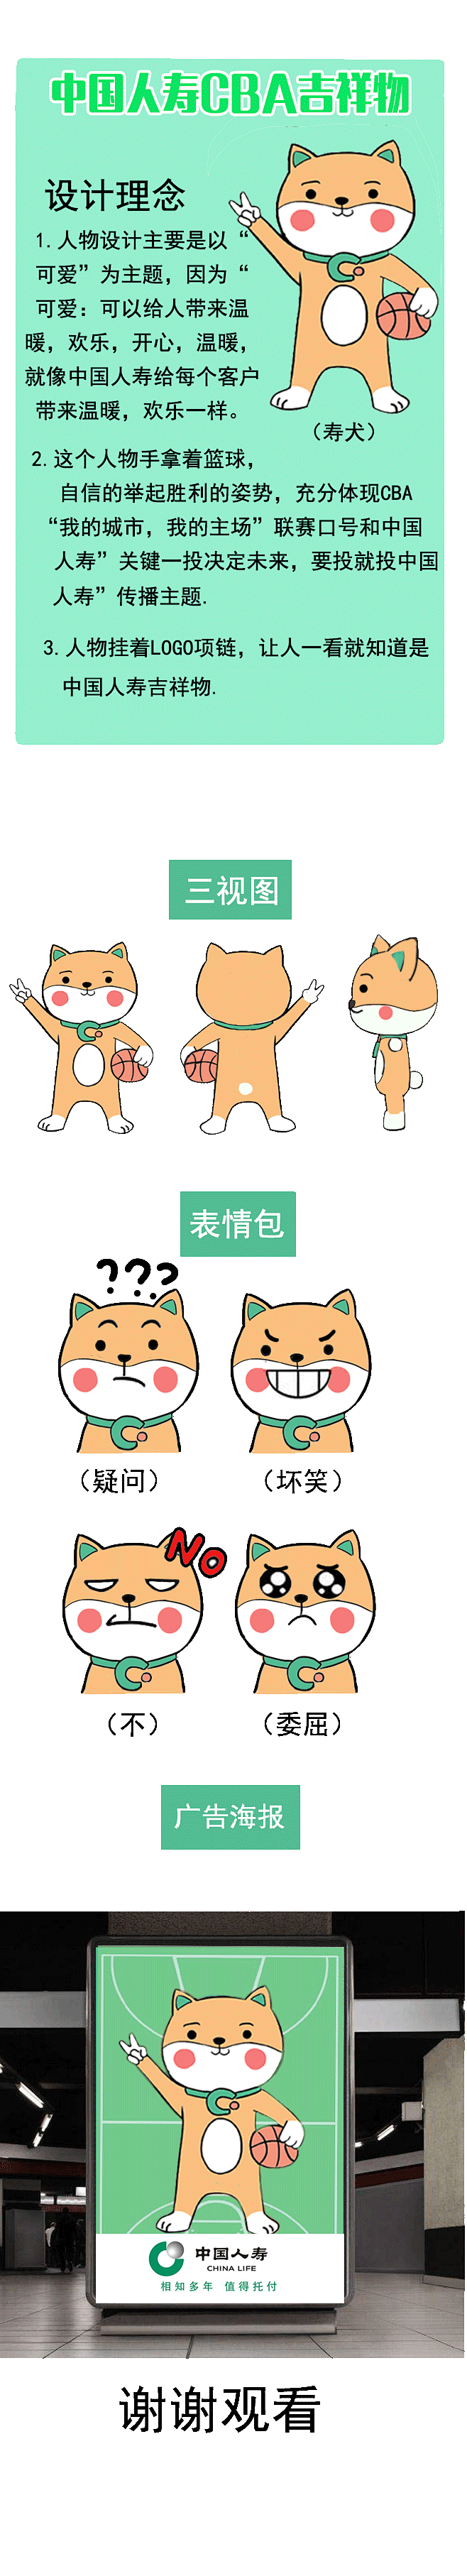 中国人寿CBA吉祥物——寿犬